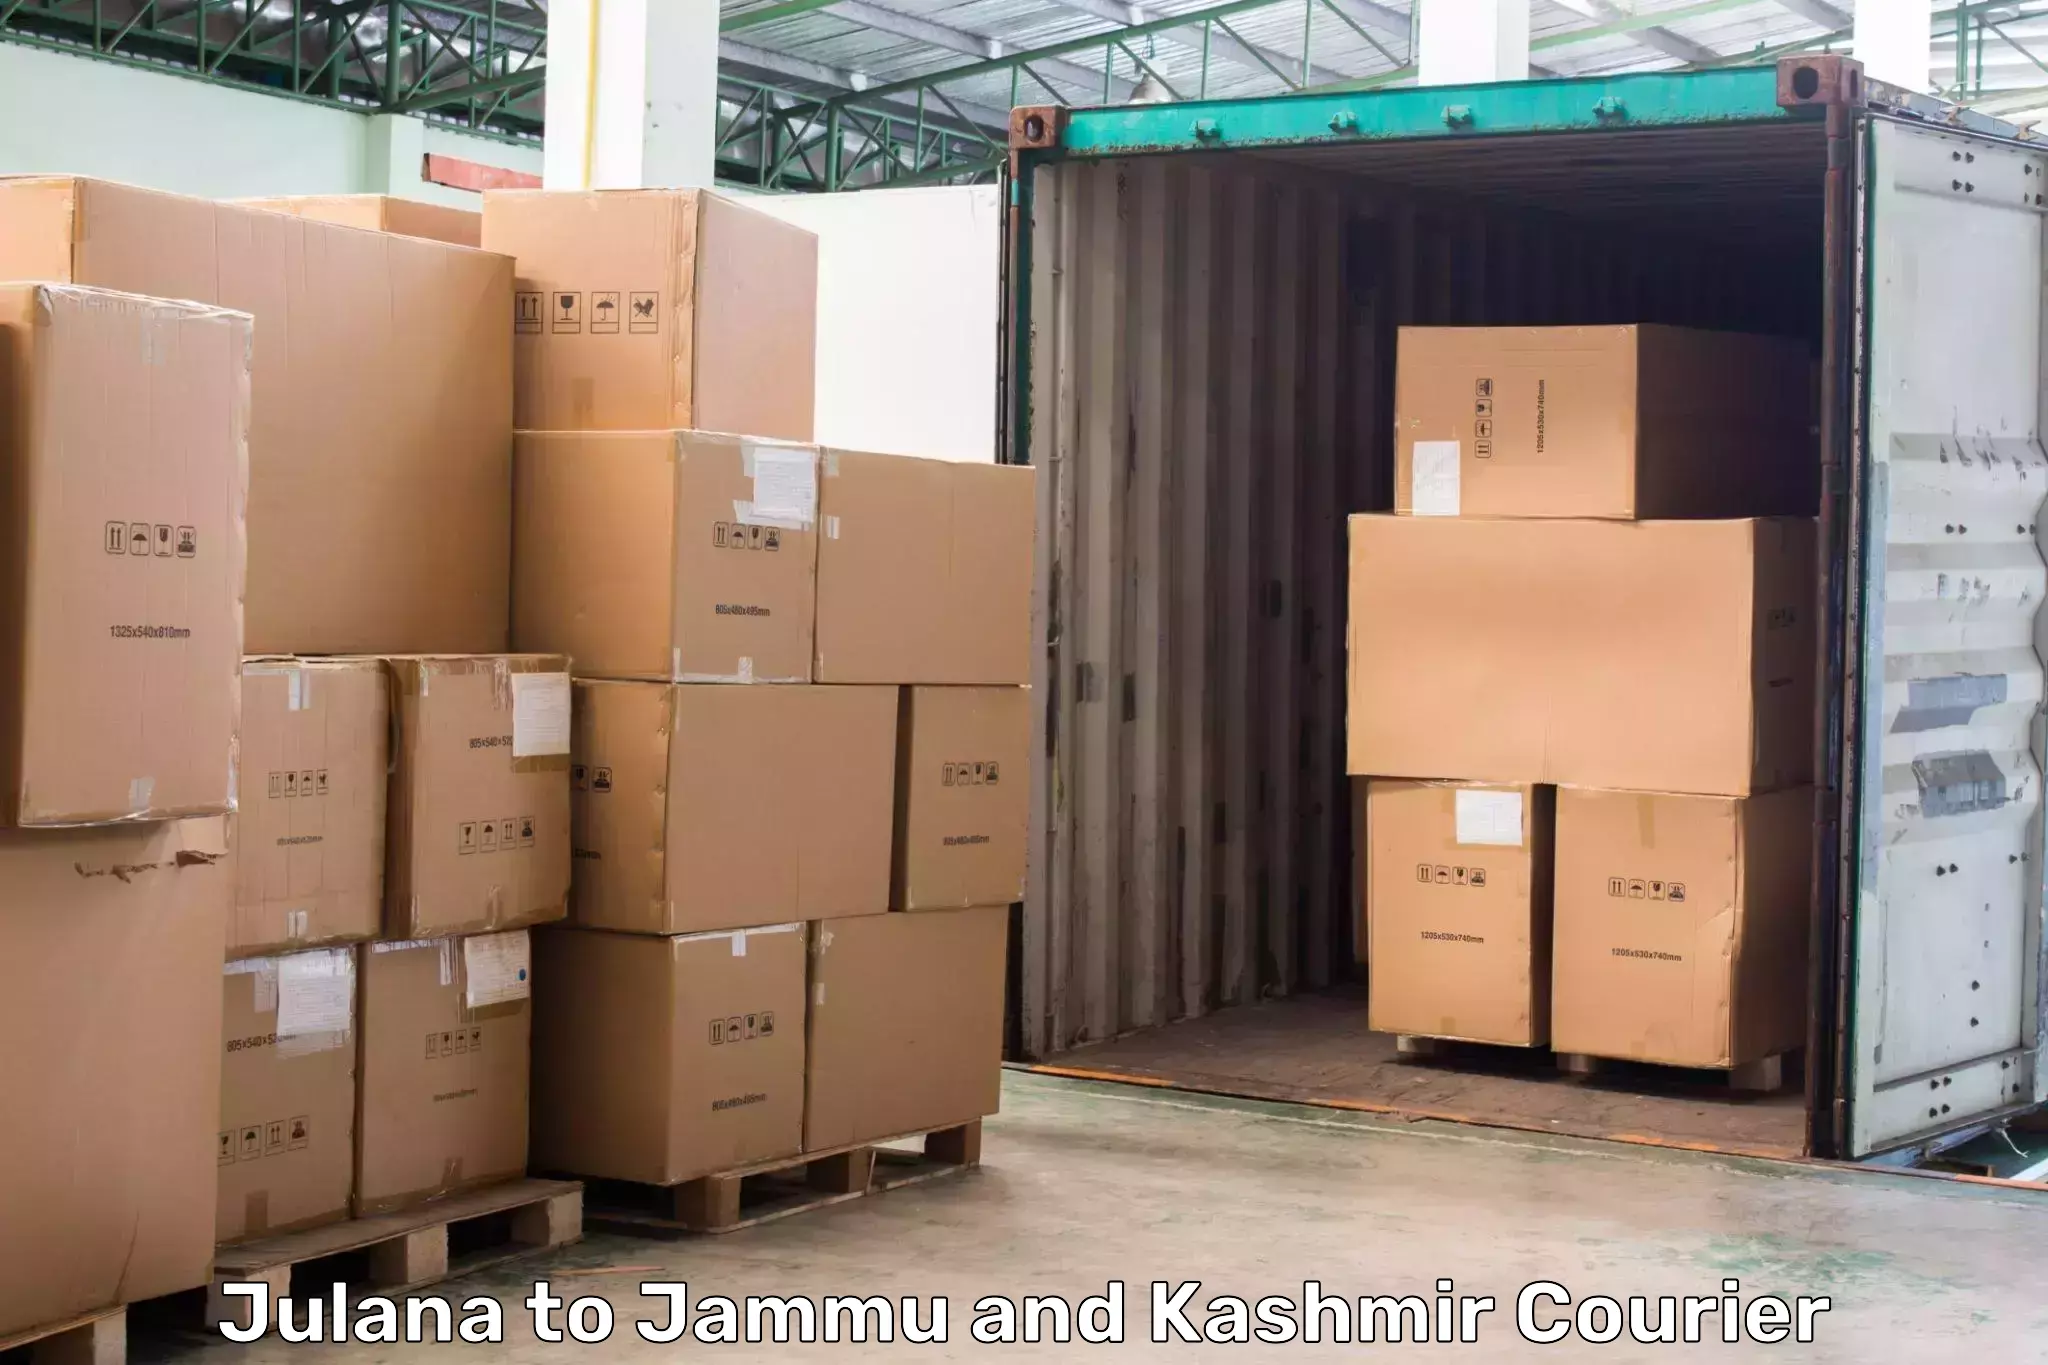 Customized shipping options Julana to Jammu and Kashmir